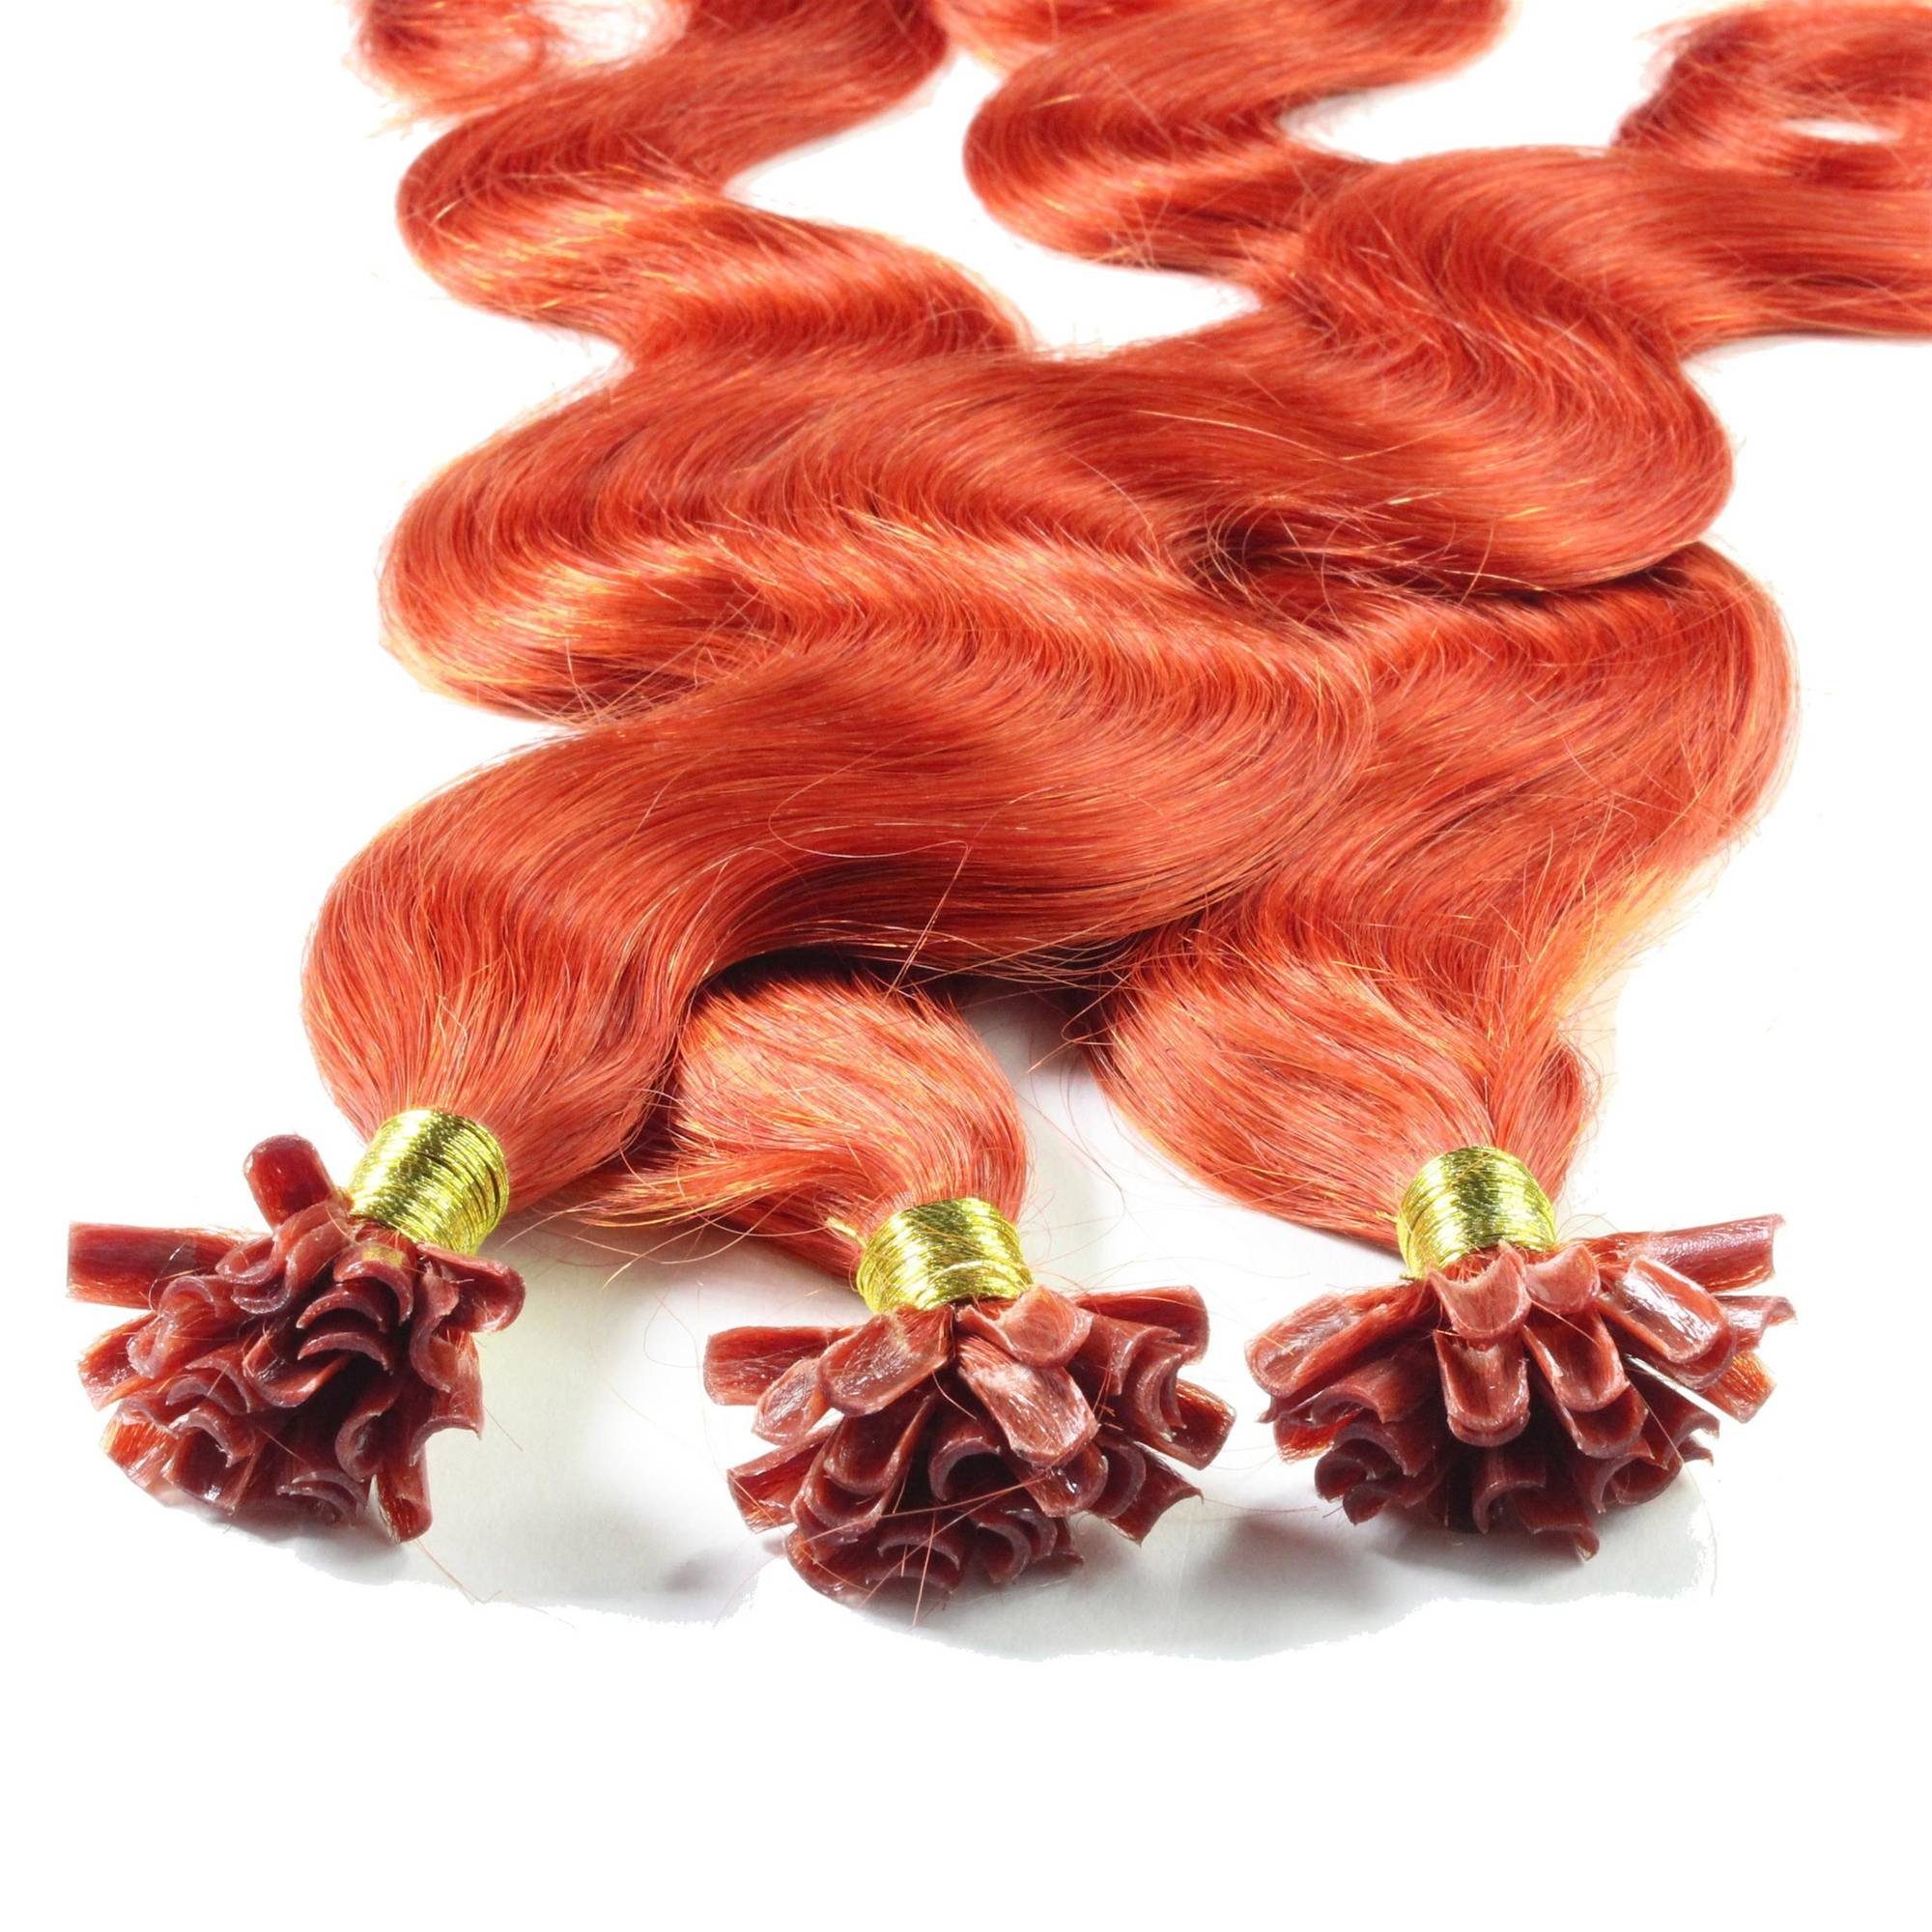 Bonding Hellblond #8/43 Rot-Gold hair2heart 0.5g Extensions 40cm Echthaar-Extension gewellt